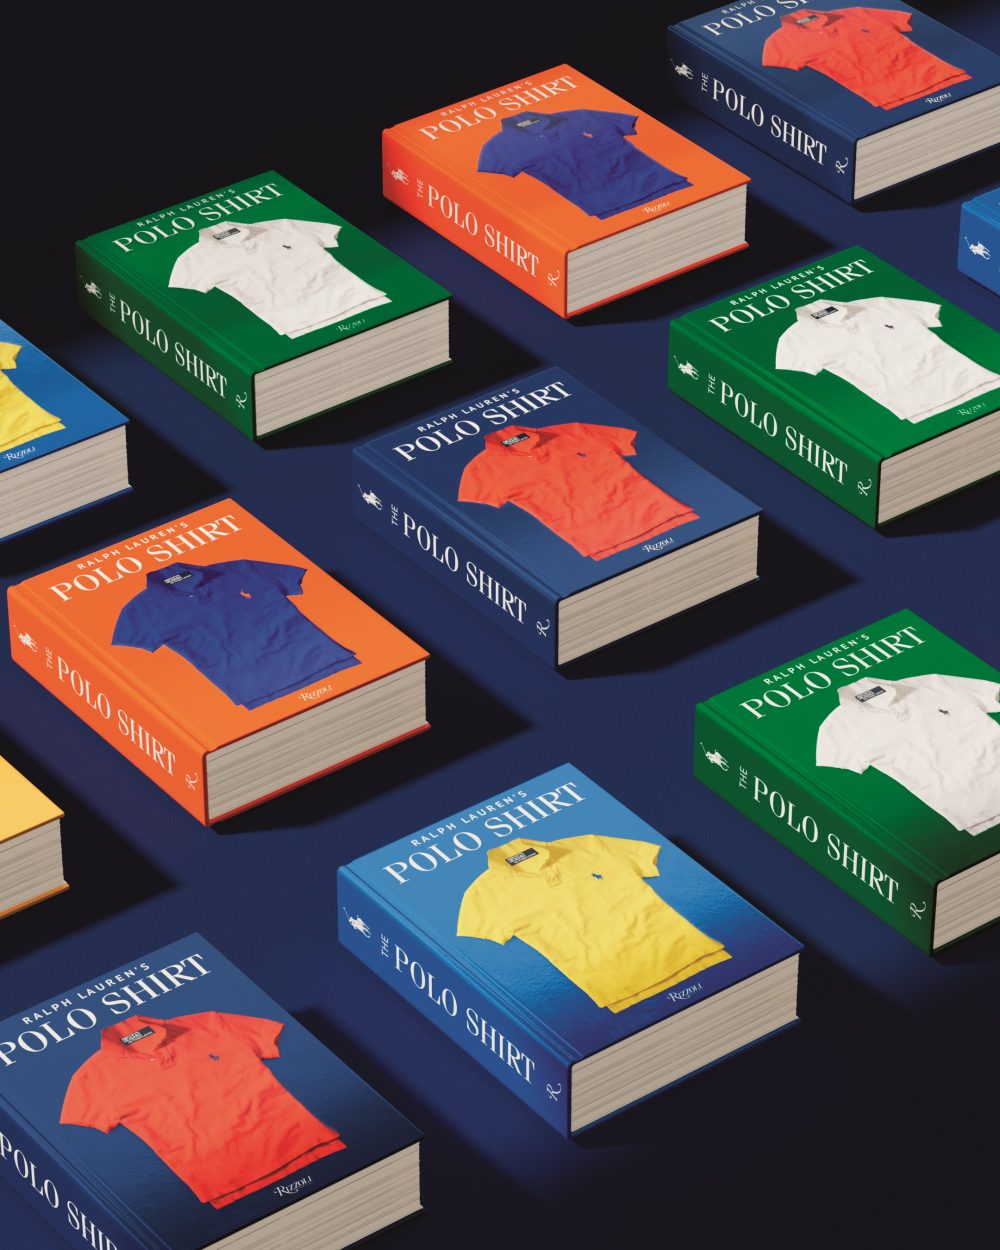 ラルフ ローレン ポロシャツ誕生50周年の軌跡を辿る記念ブック創刊